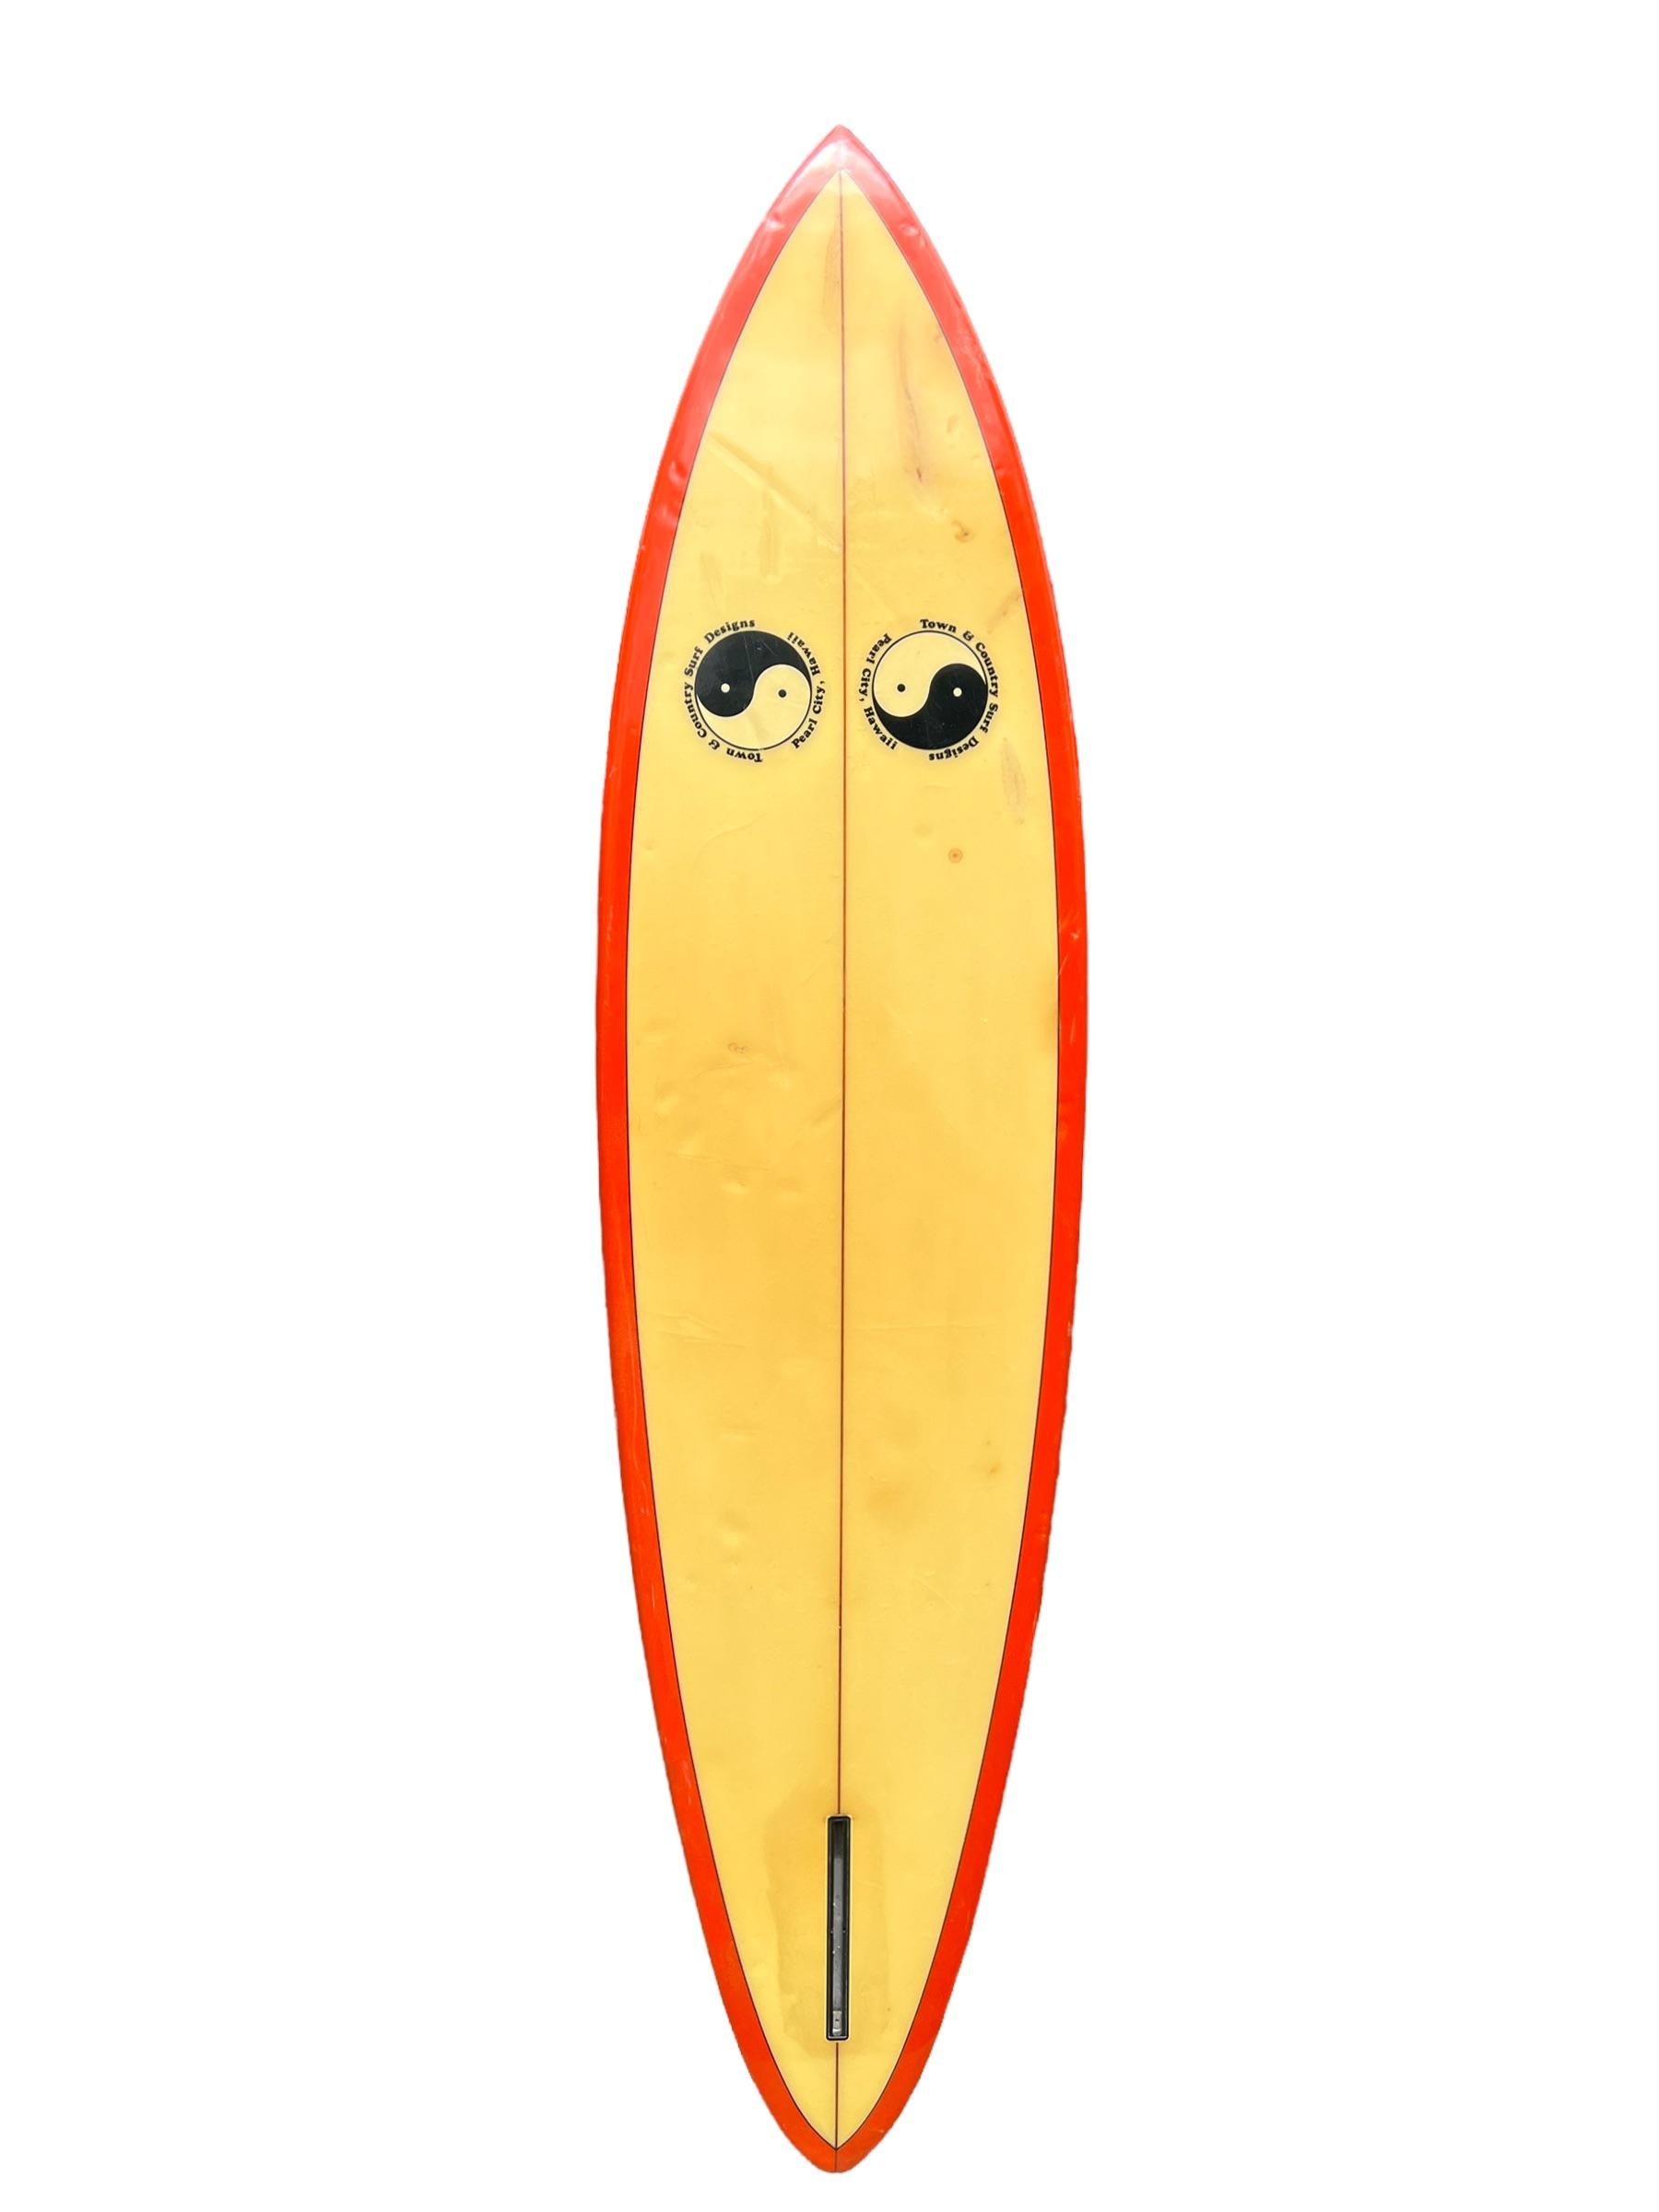 planche de surf Town & Country 1979 fabriquée par Ed Angulo. Il est doté d'un magnifique pont/rails teintés en rouge, de doubles laminés T&C et d'un aileron simple en forme de boîte. Un exemple remarquable d'une planche de surf des années 1970